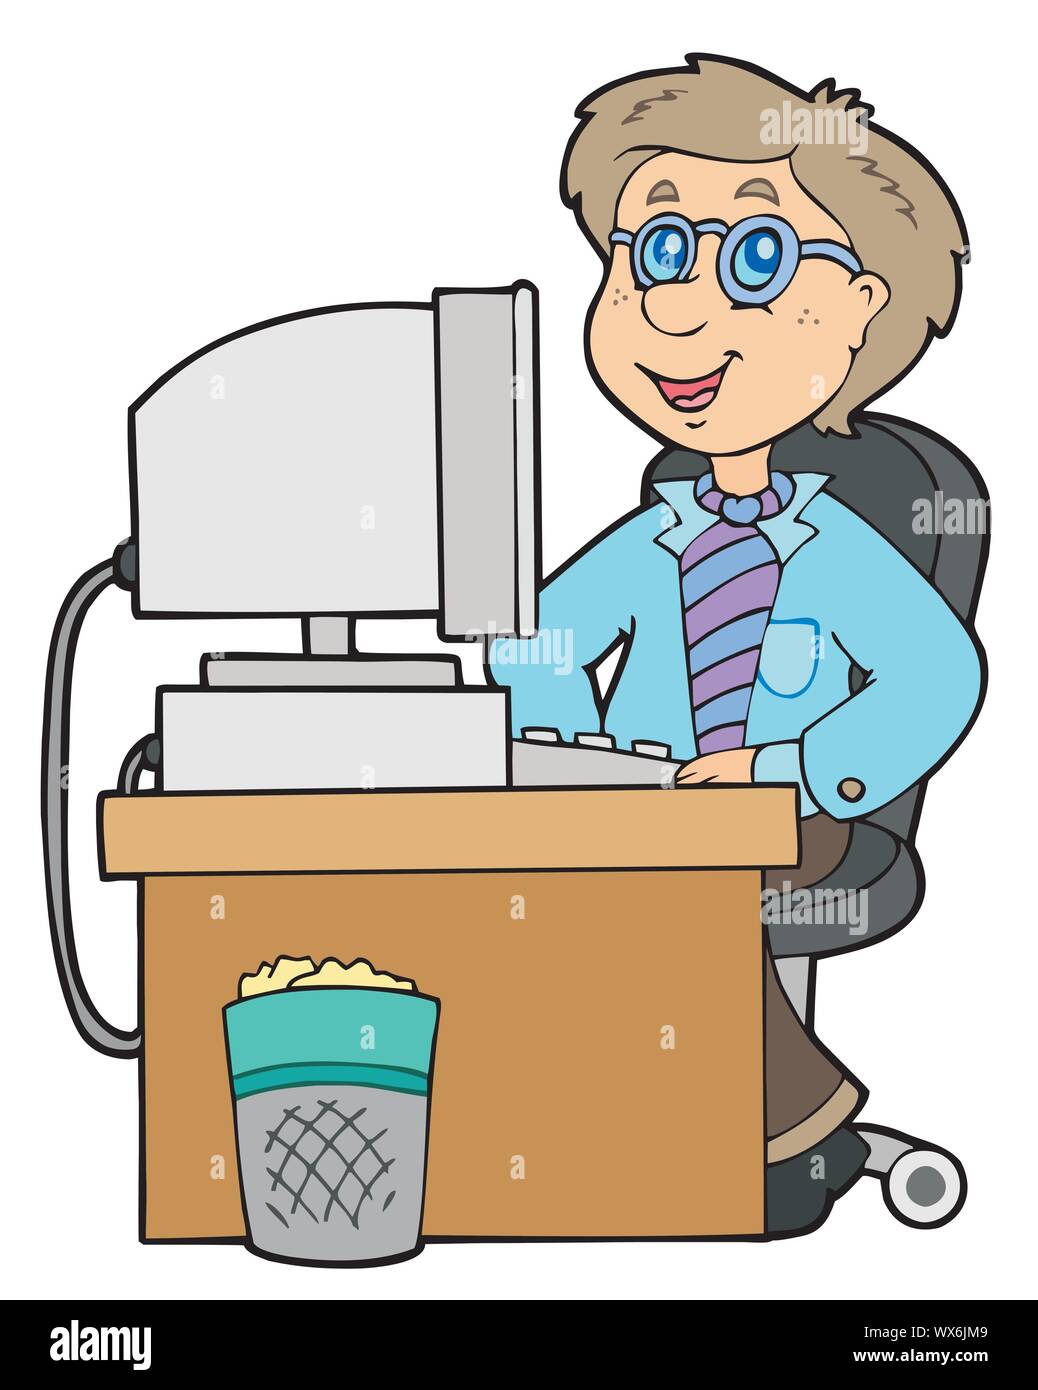 Cartoon office worker Stock Vector Image & Art - Alamy